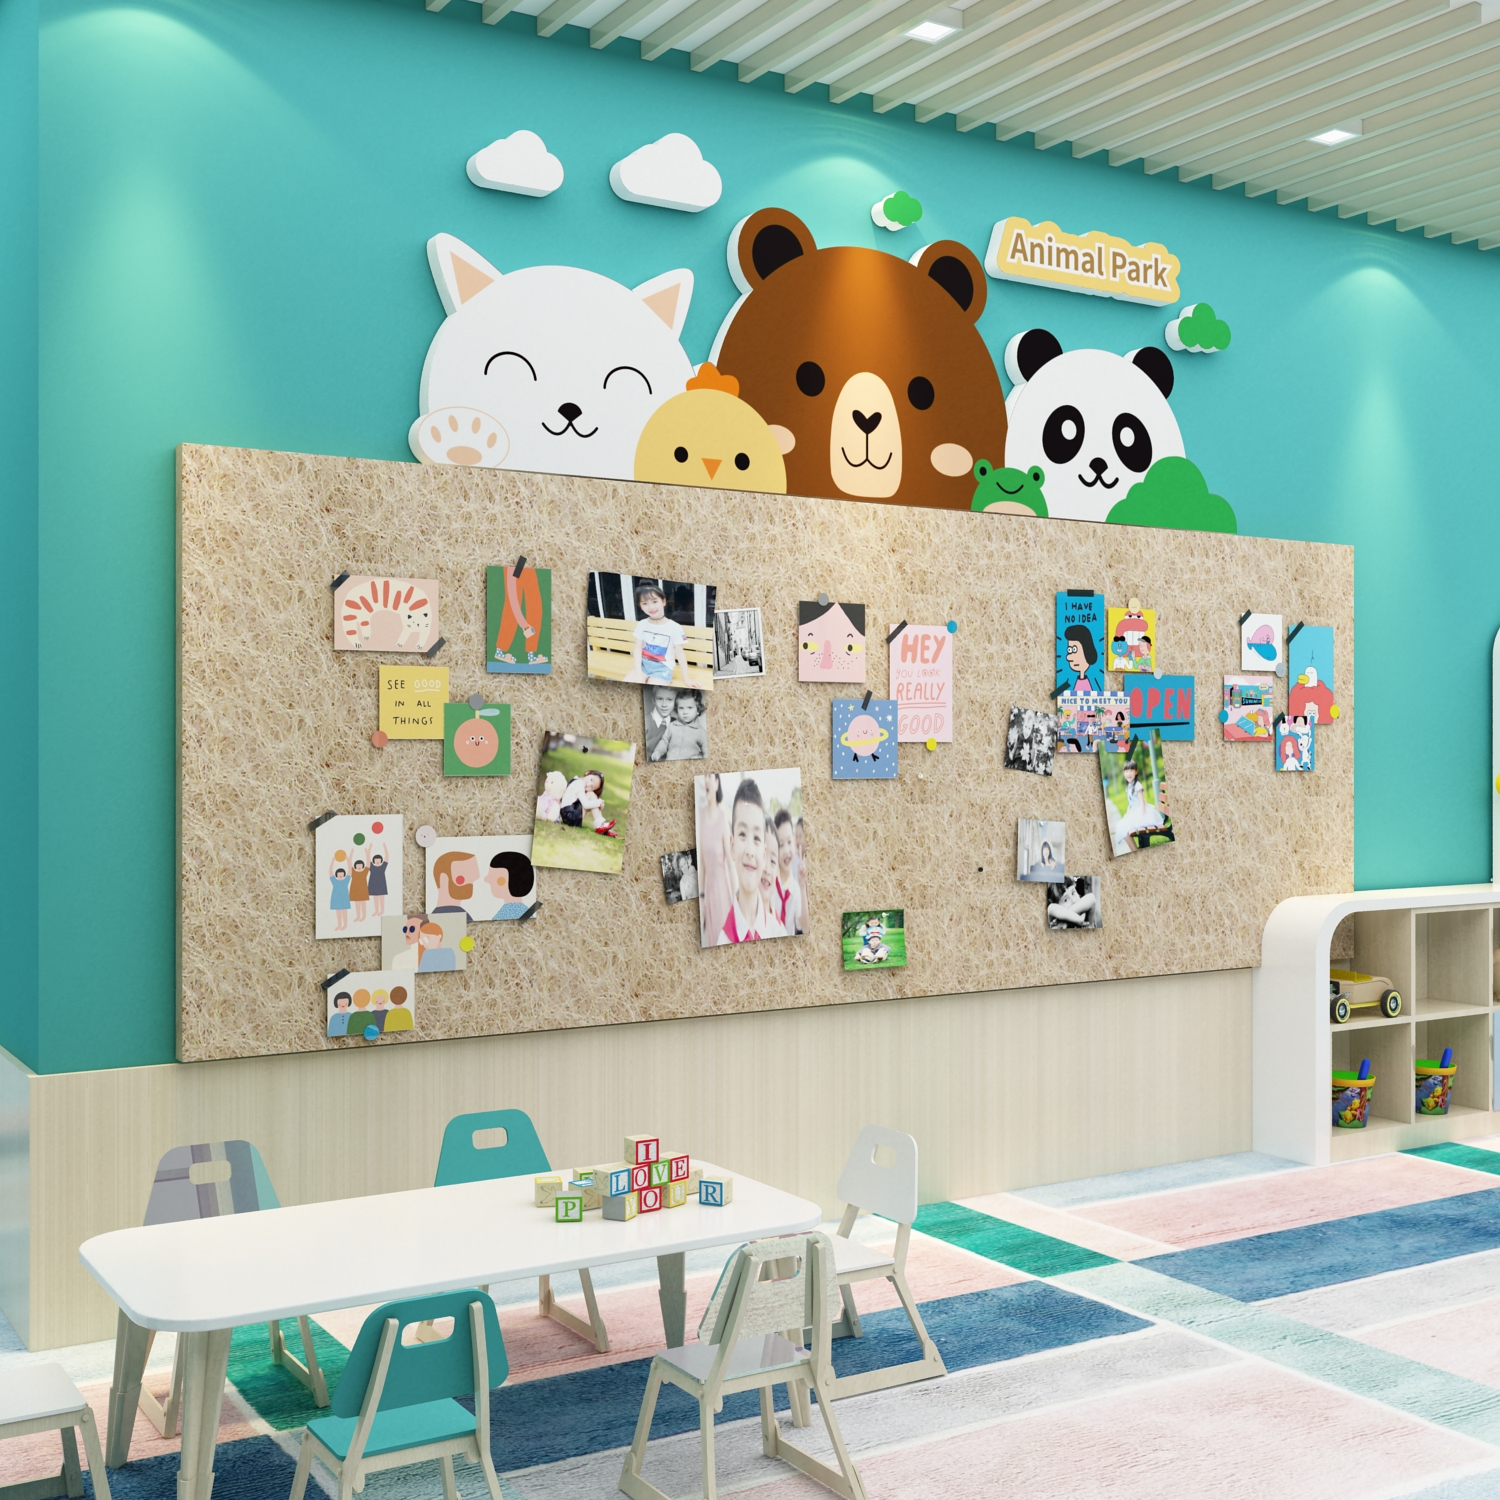 幼儿园环创主题成品照片展示墙面贴毛毡板装饰画布置美术教室互动图片